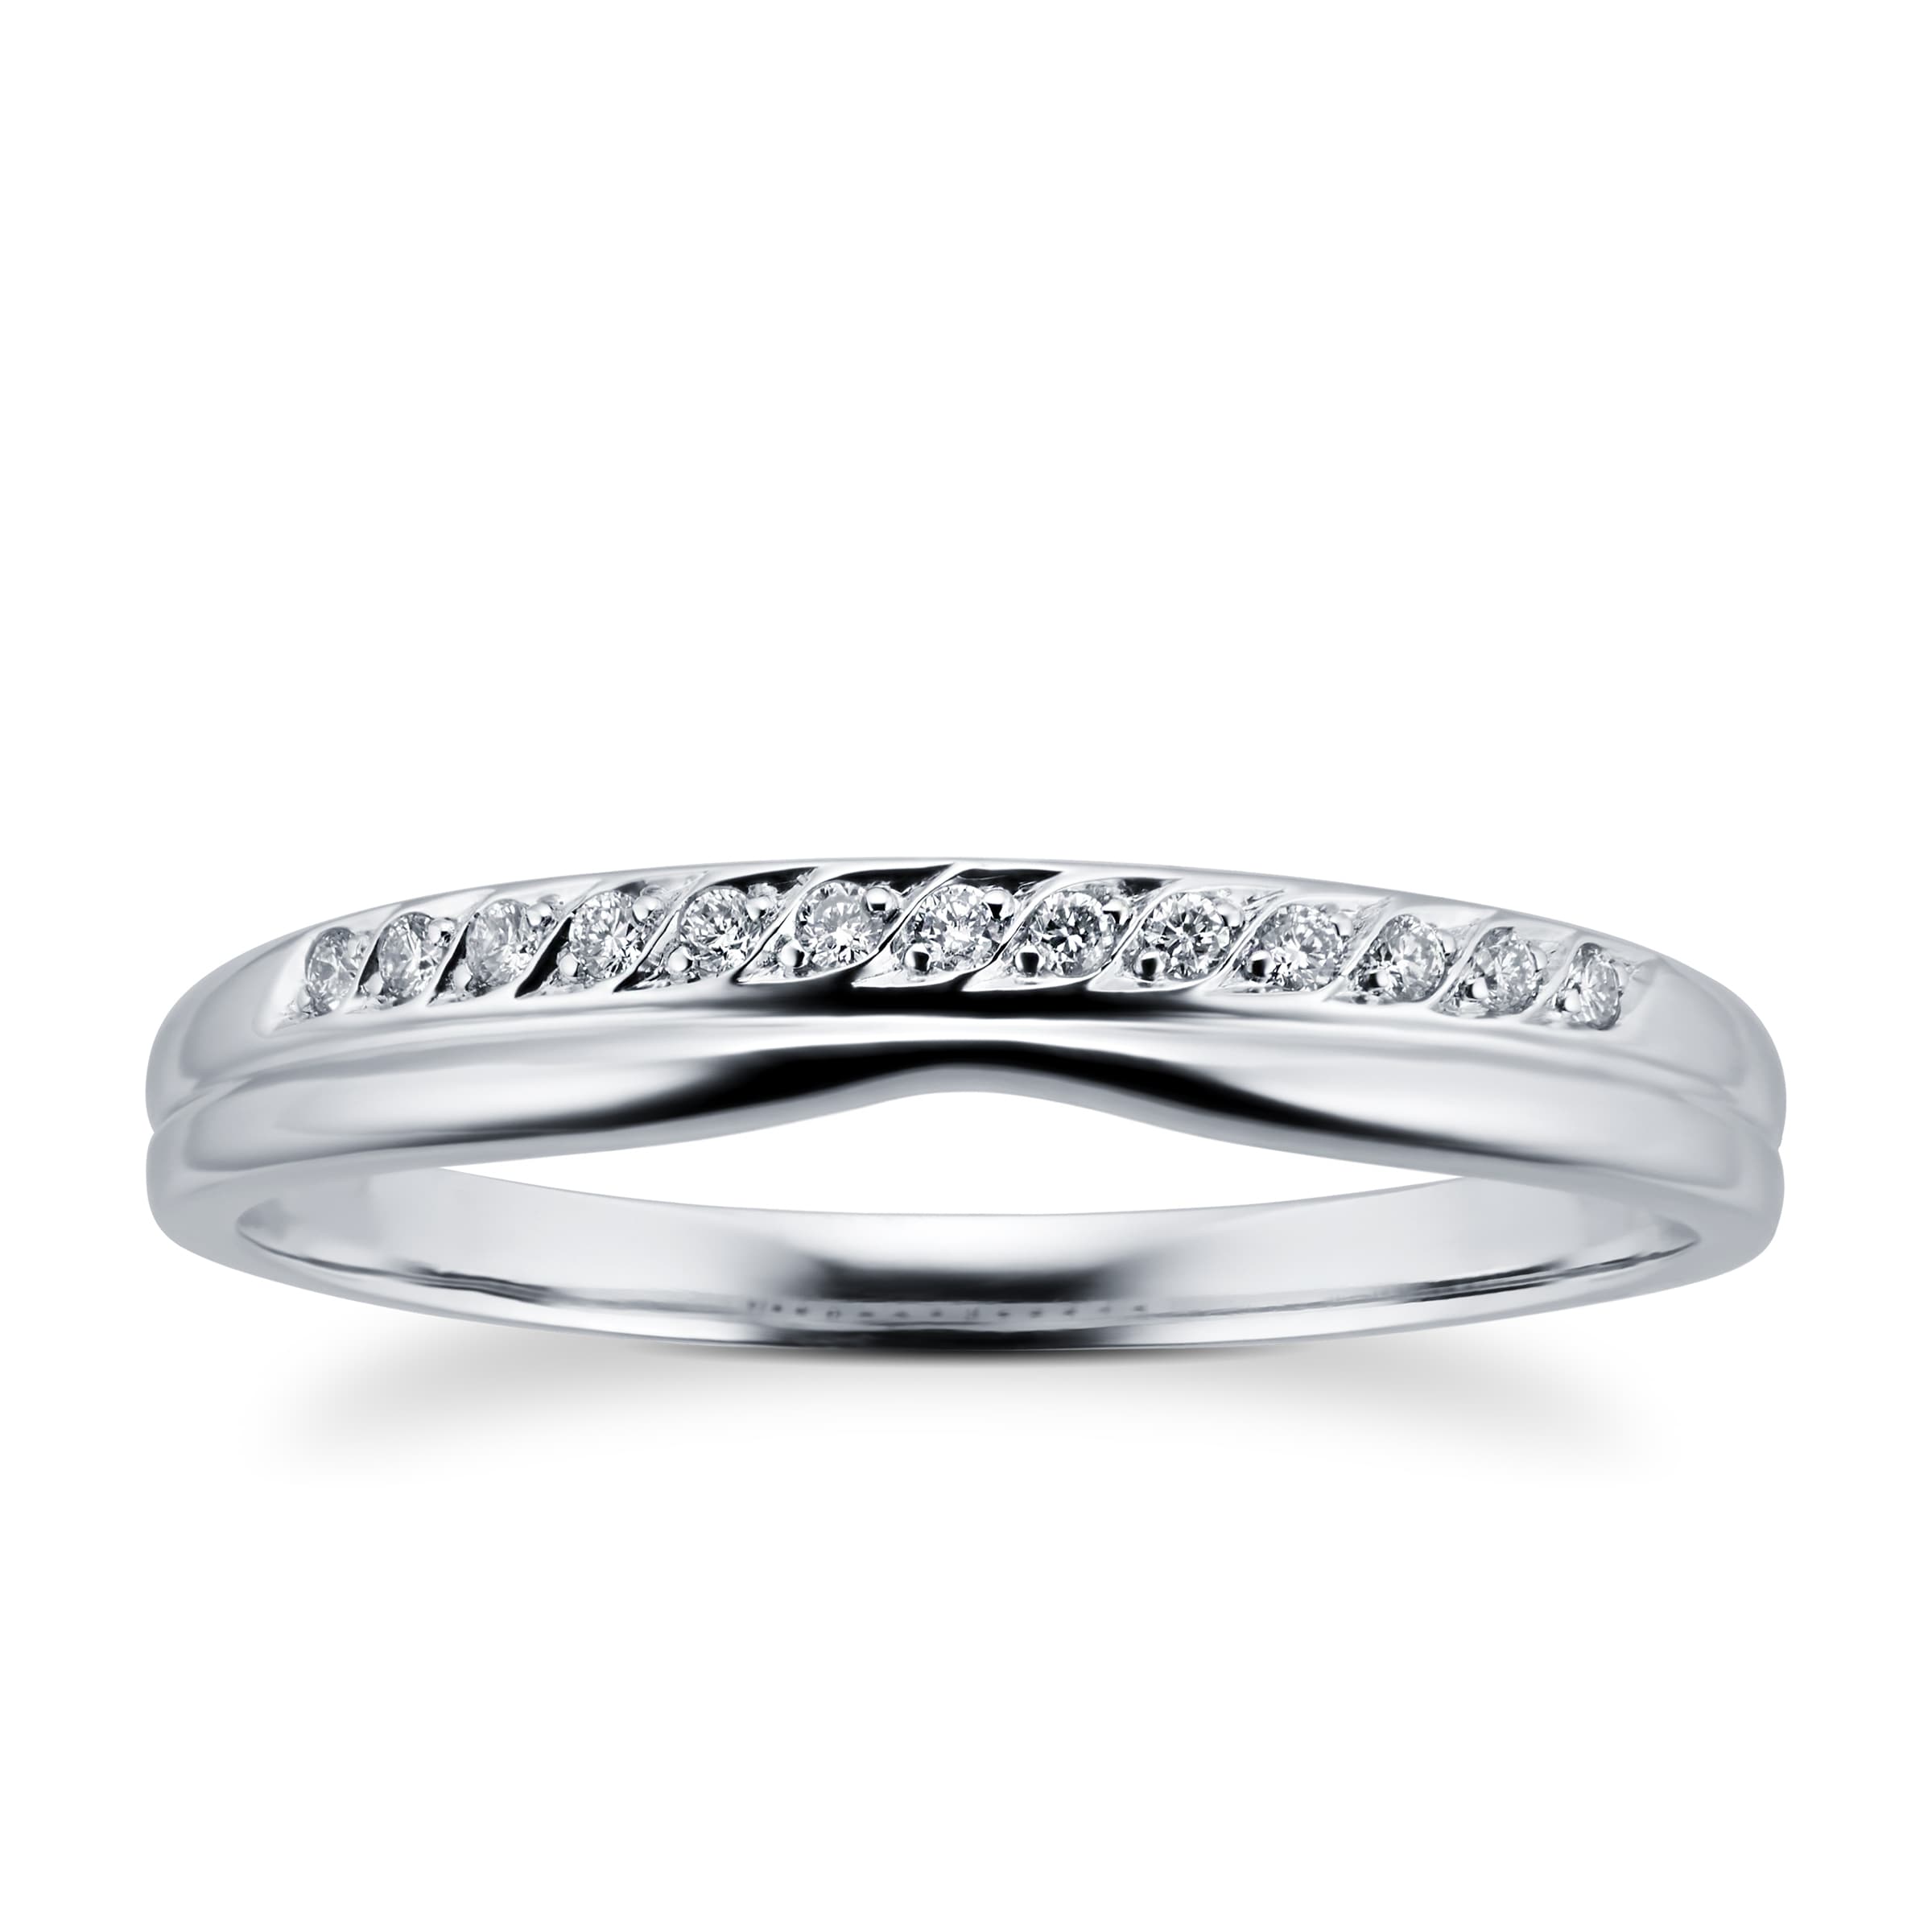 Ladies Diamond Set Shaped Wedding Ring In 18 Carat White Gold - Ring Size I